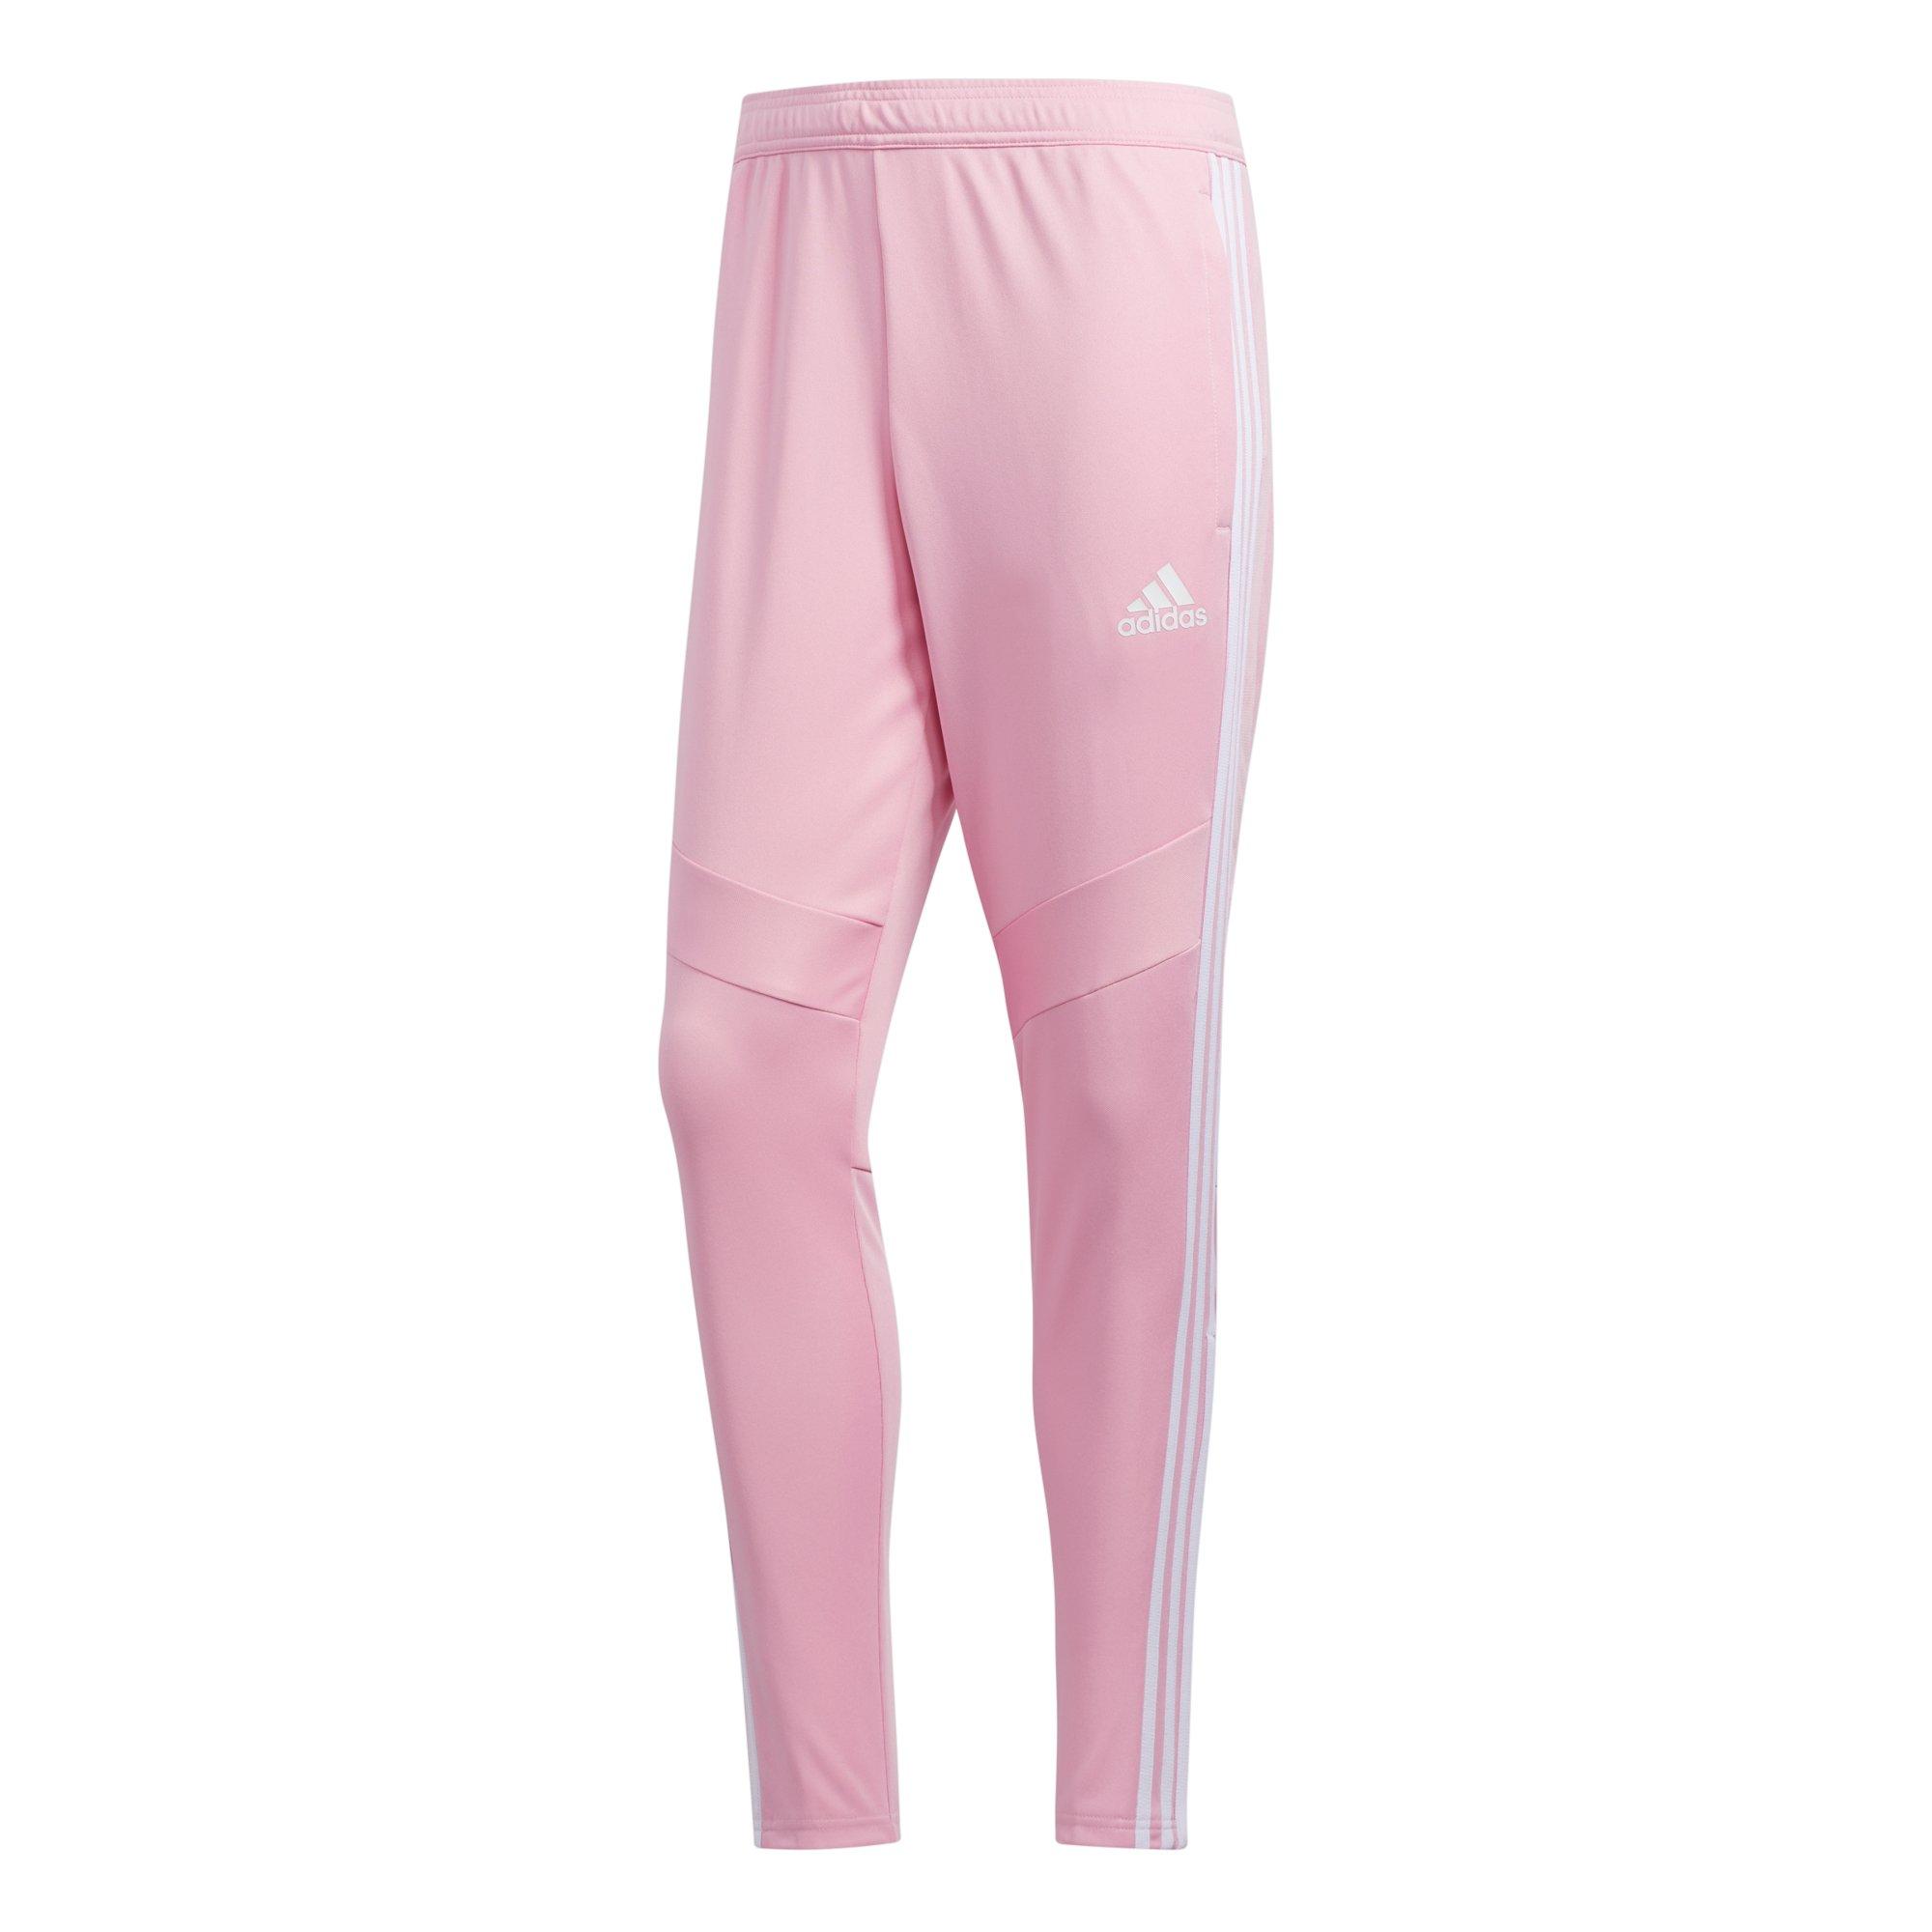 light pink adidas pants